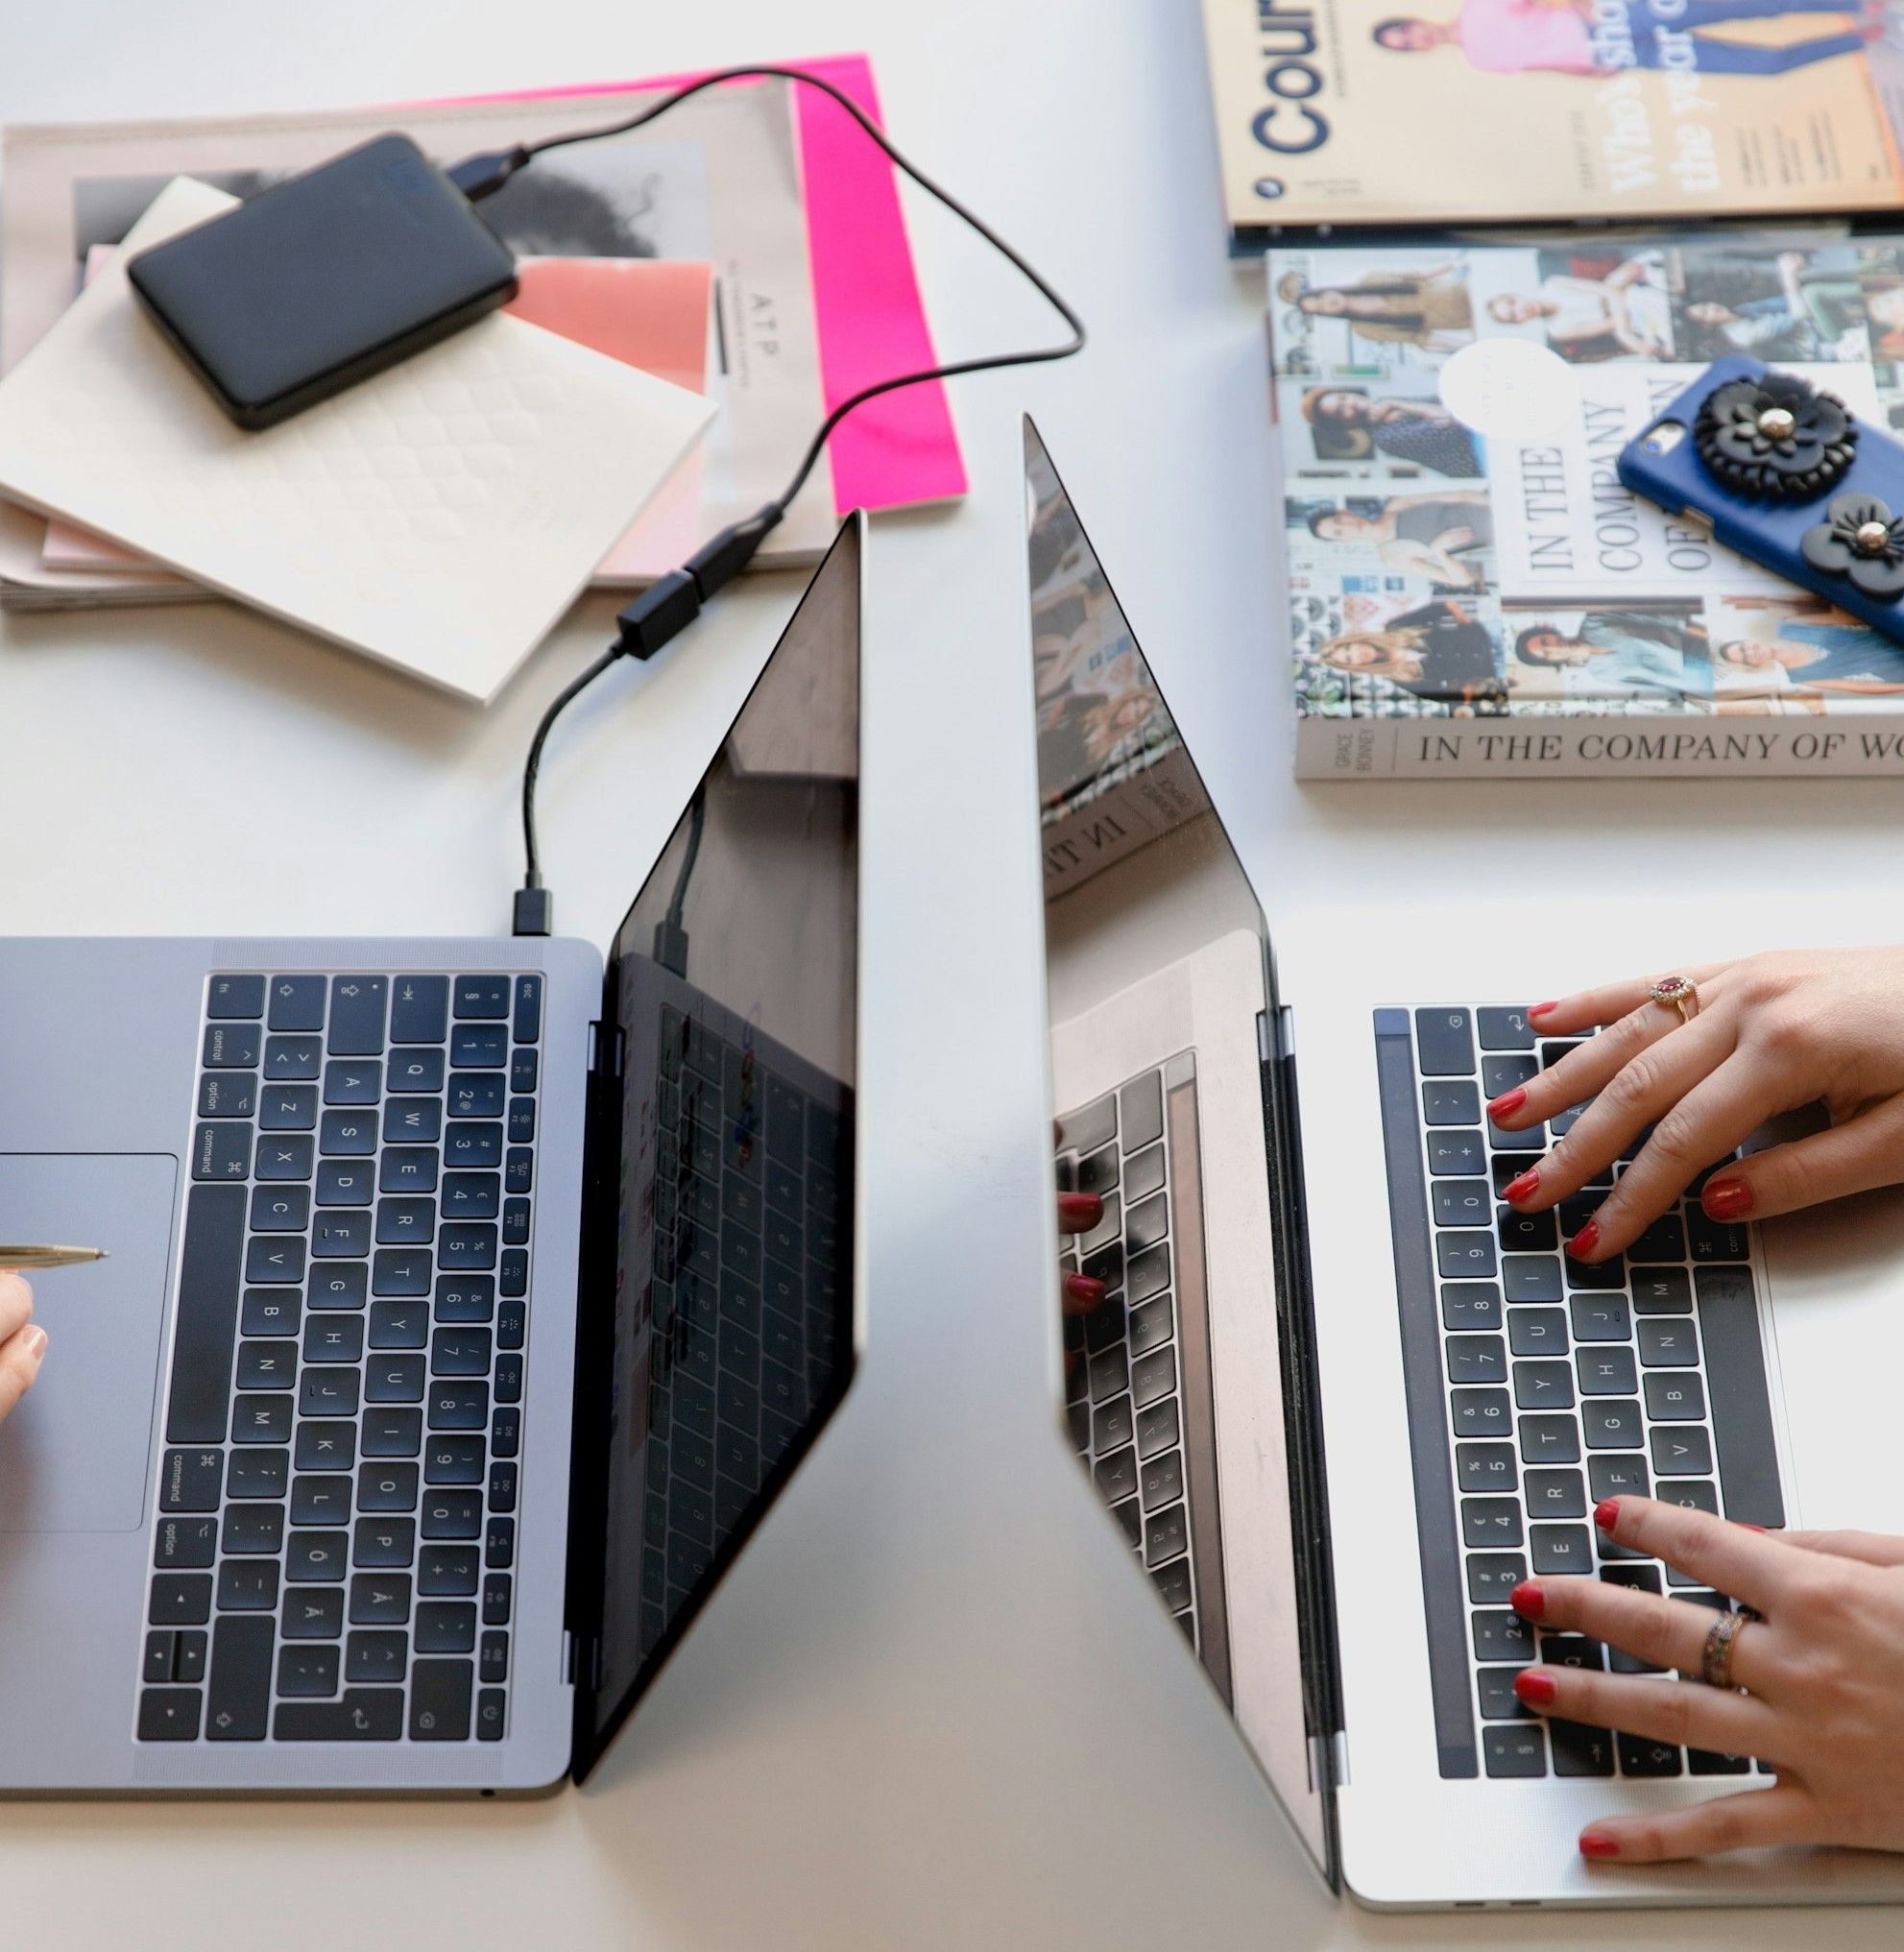 Dois MacBooks de costas um para o outro numa mesa com um disco externo, um iPhone e livros. Dos utilizadores, só as mãos estão visíveis.